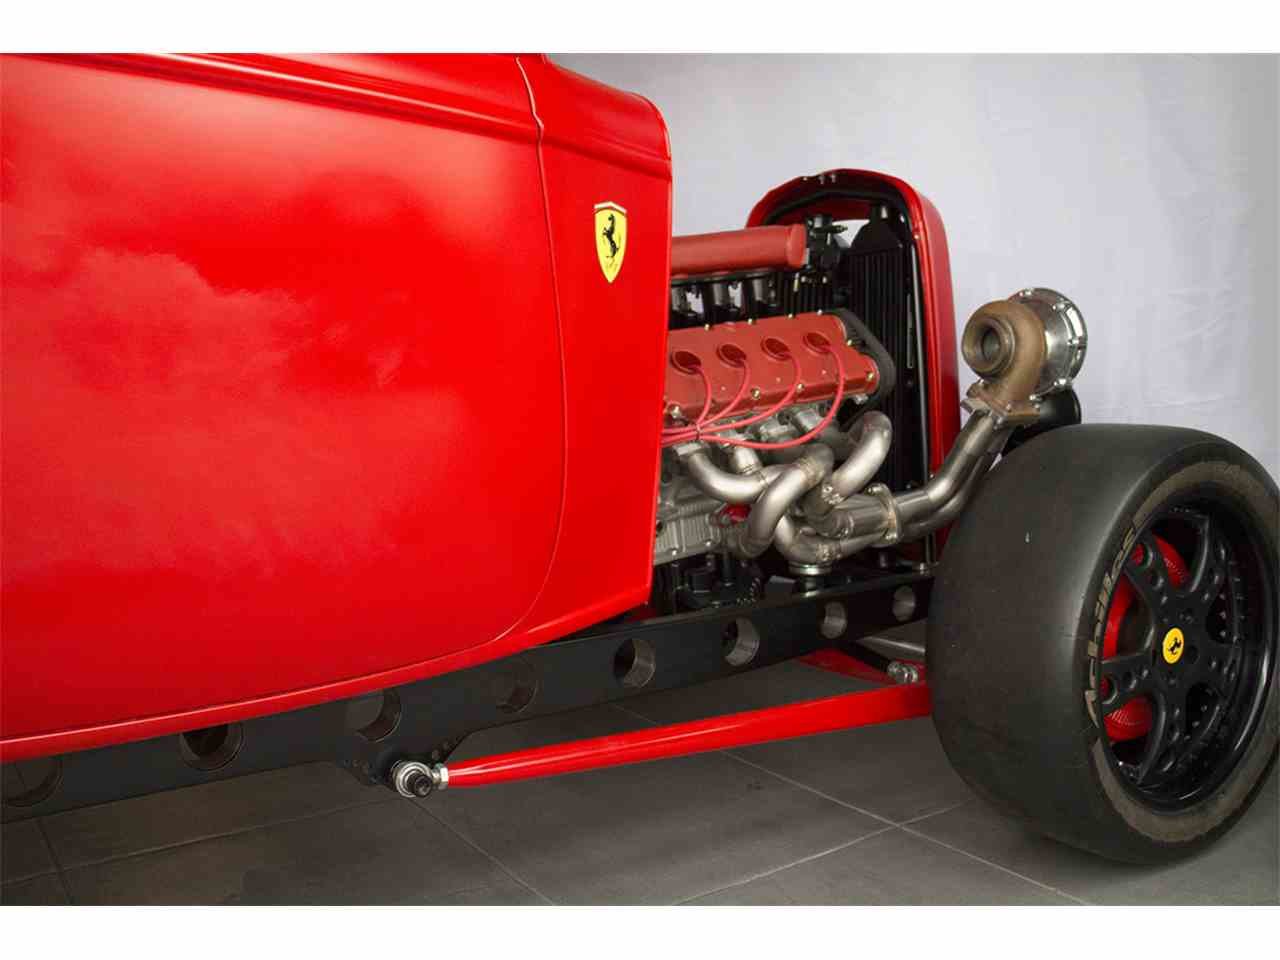 Ford 1932 s motorem z Ferrari Maranello